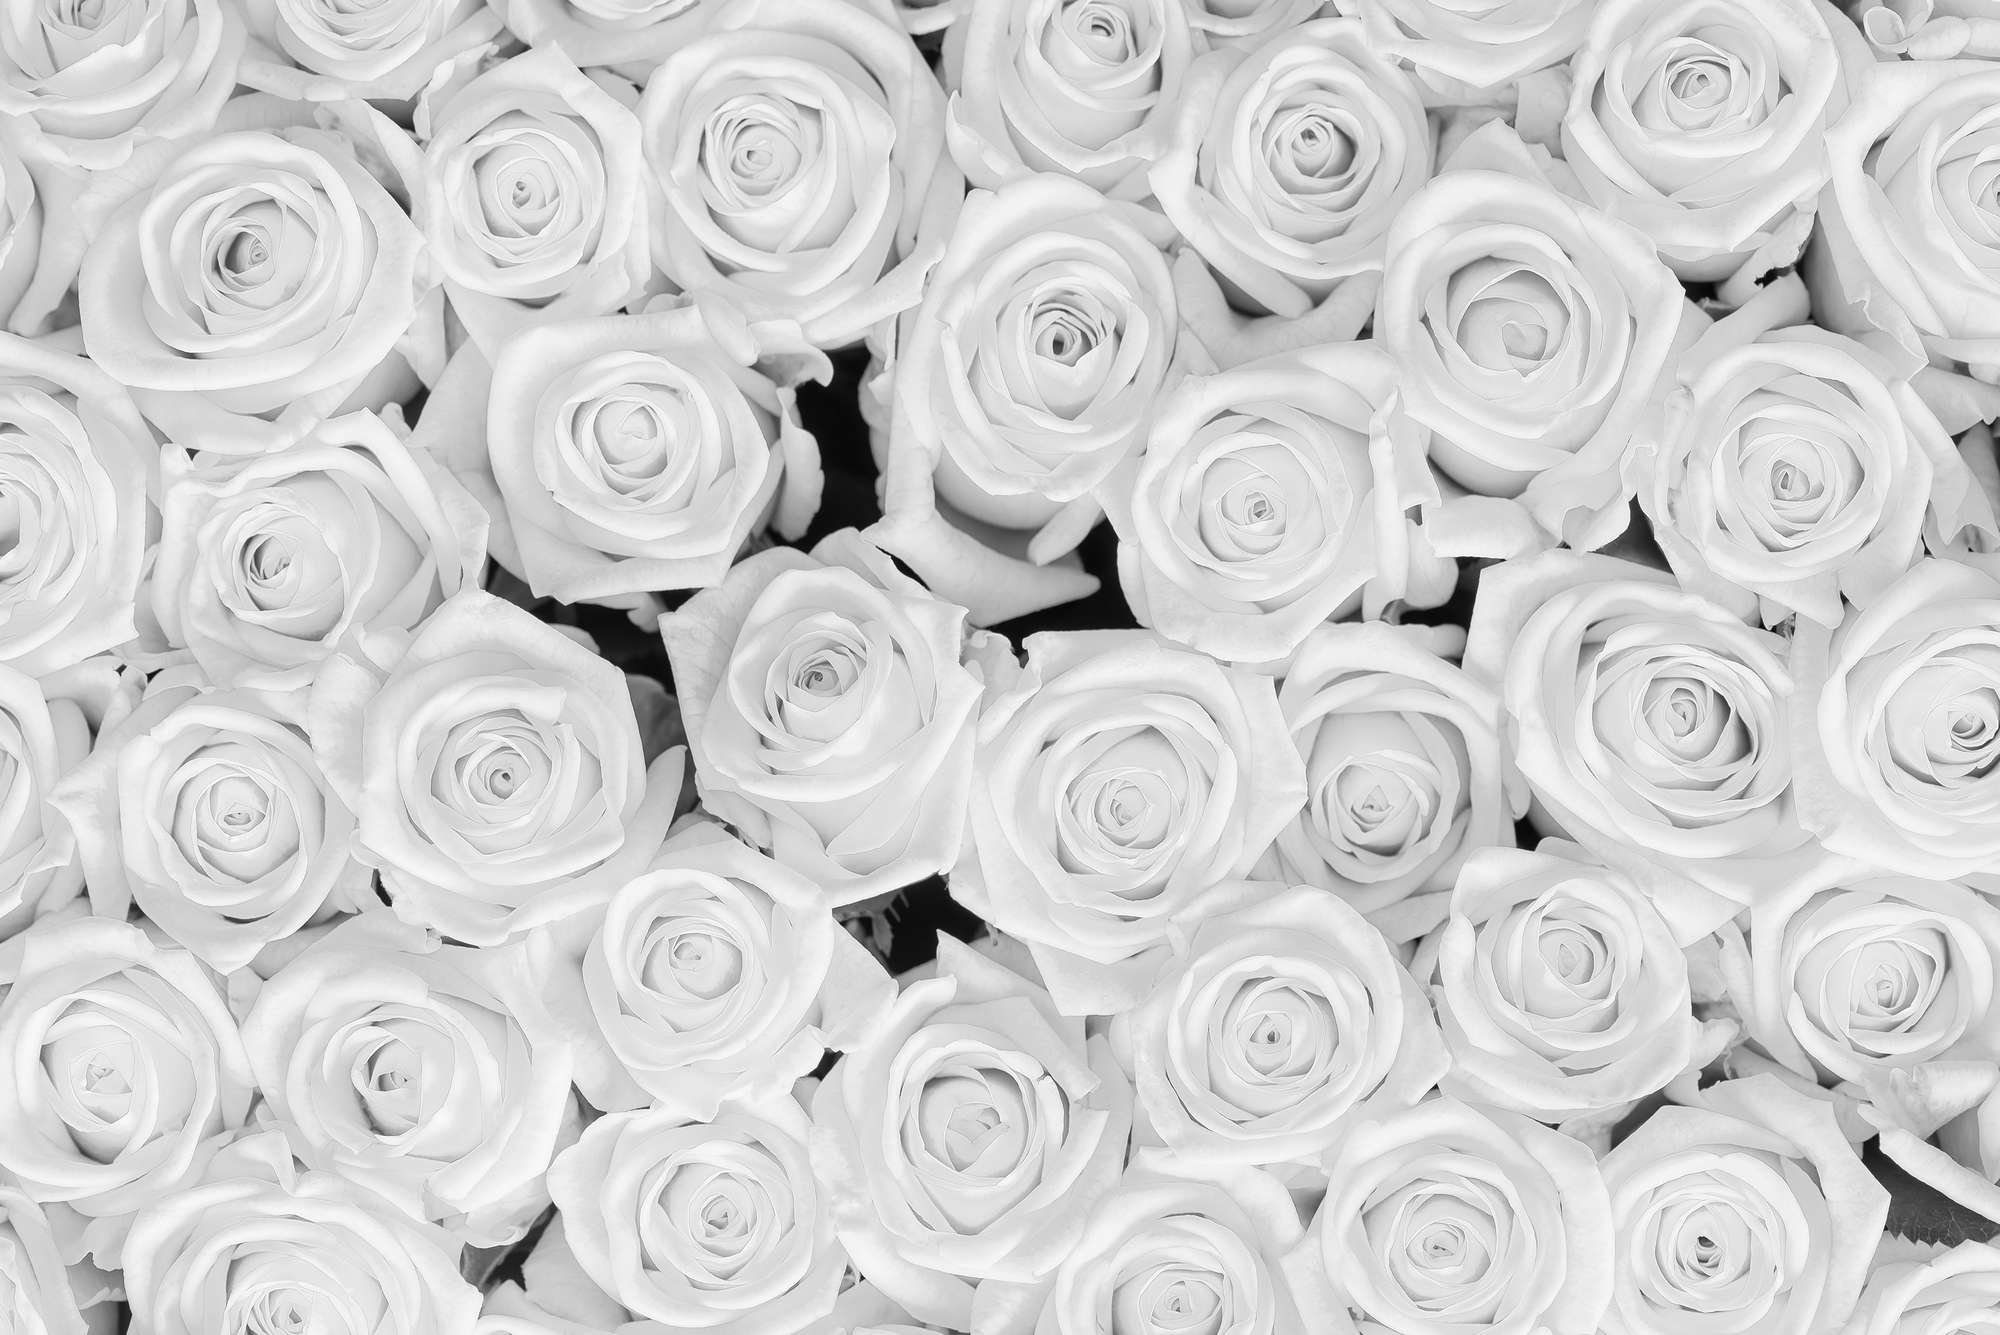             Piante Carta da parati Rose bianche su vello liscio Premium
        